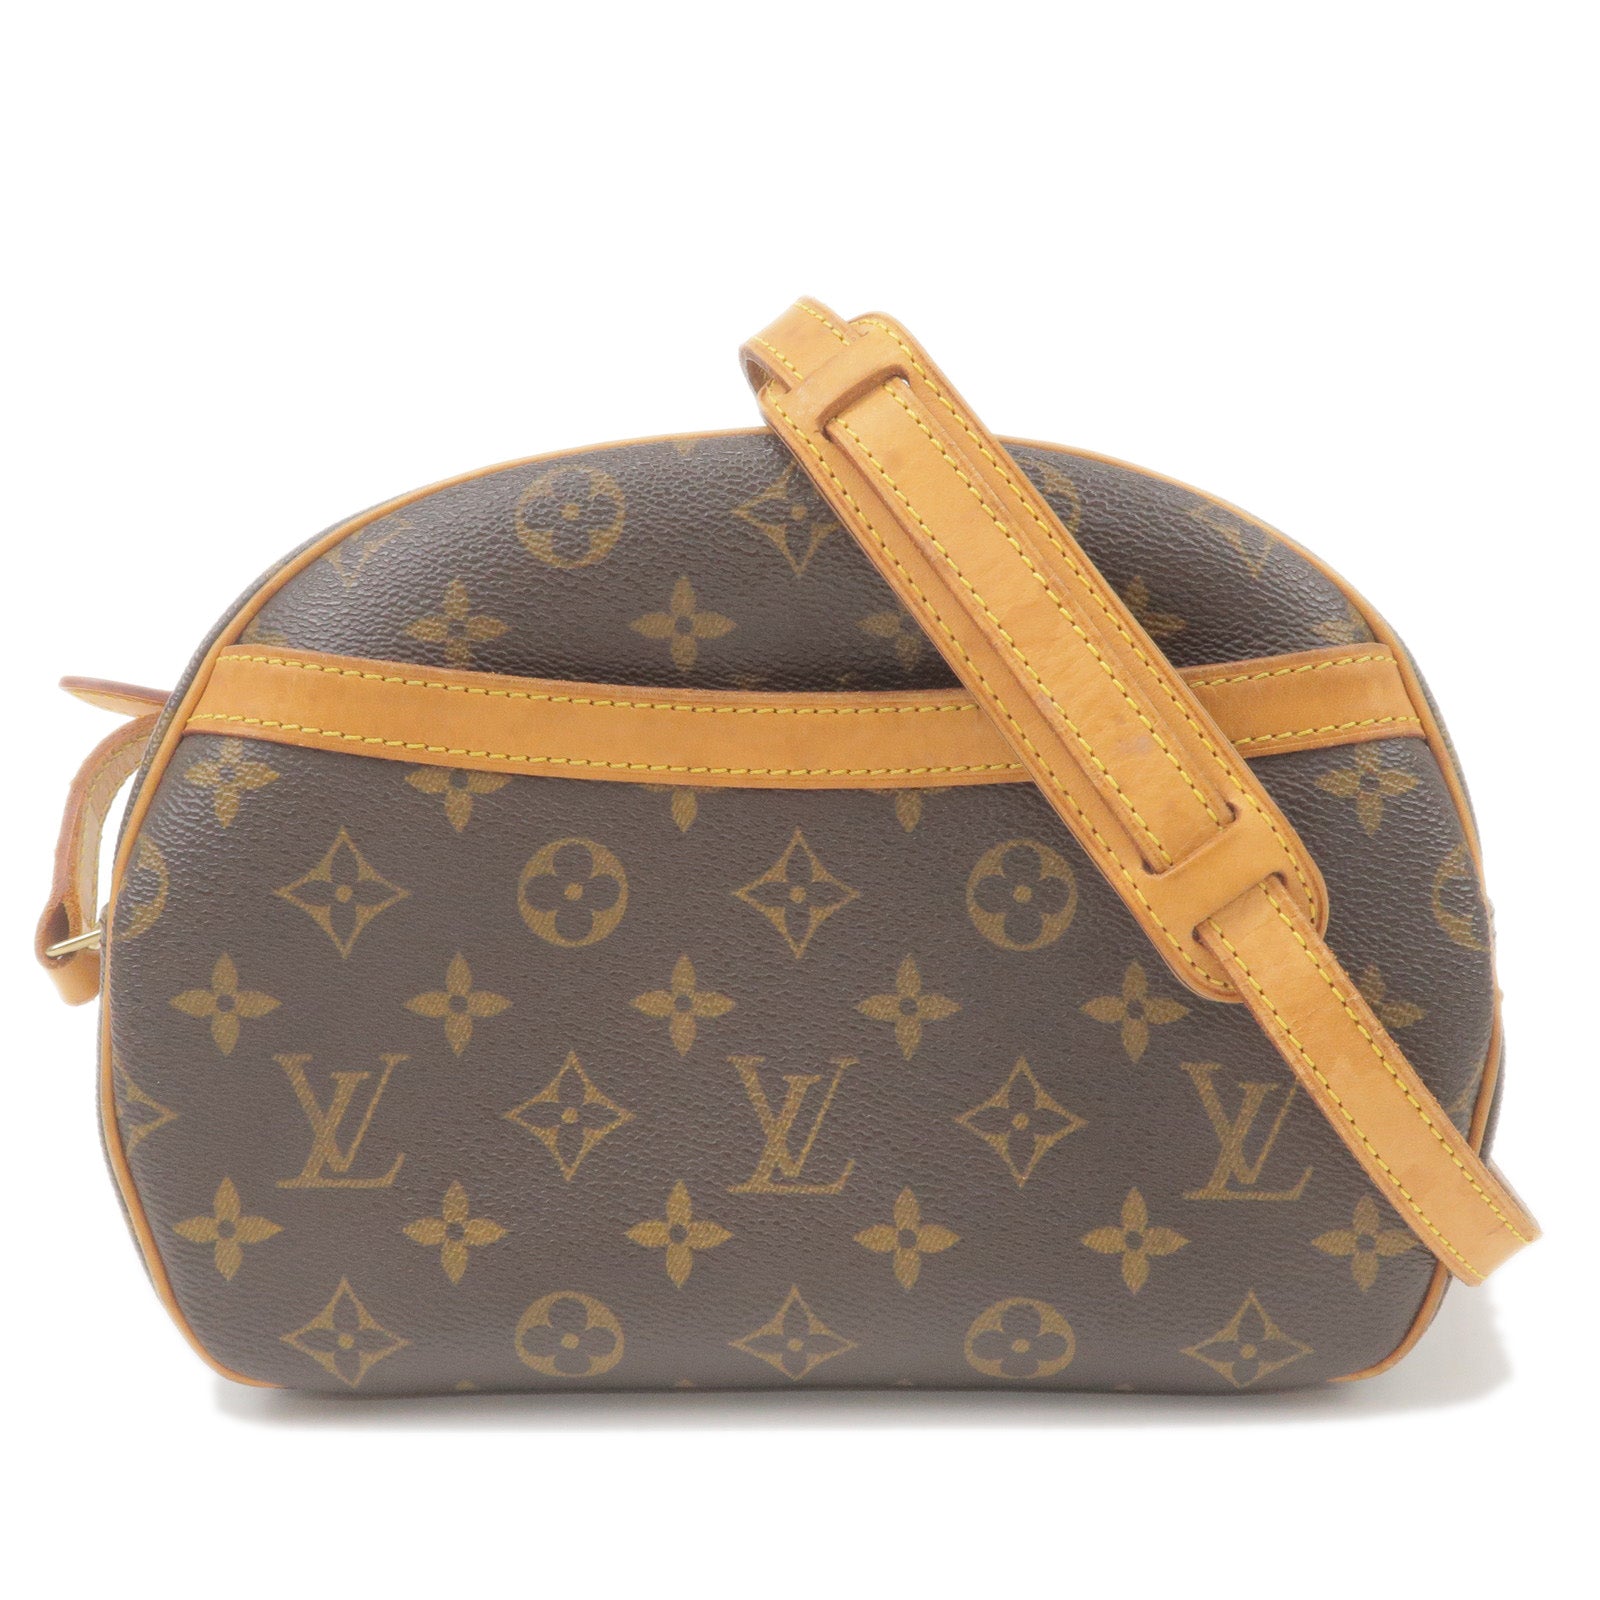 Shop for Louis Vuitton Monogram Canvas Leather Blois Crossbody Bag